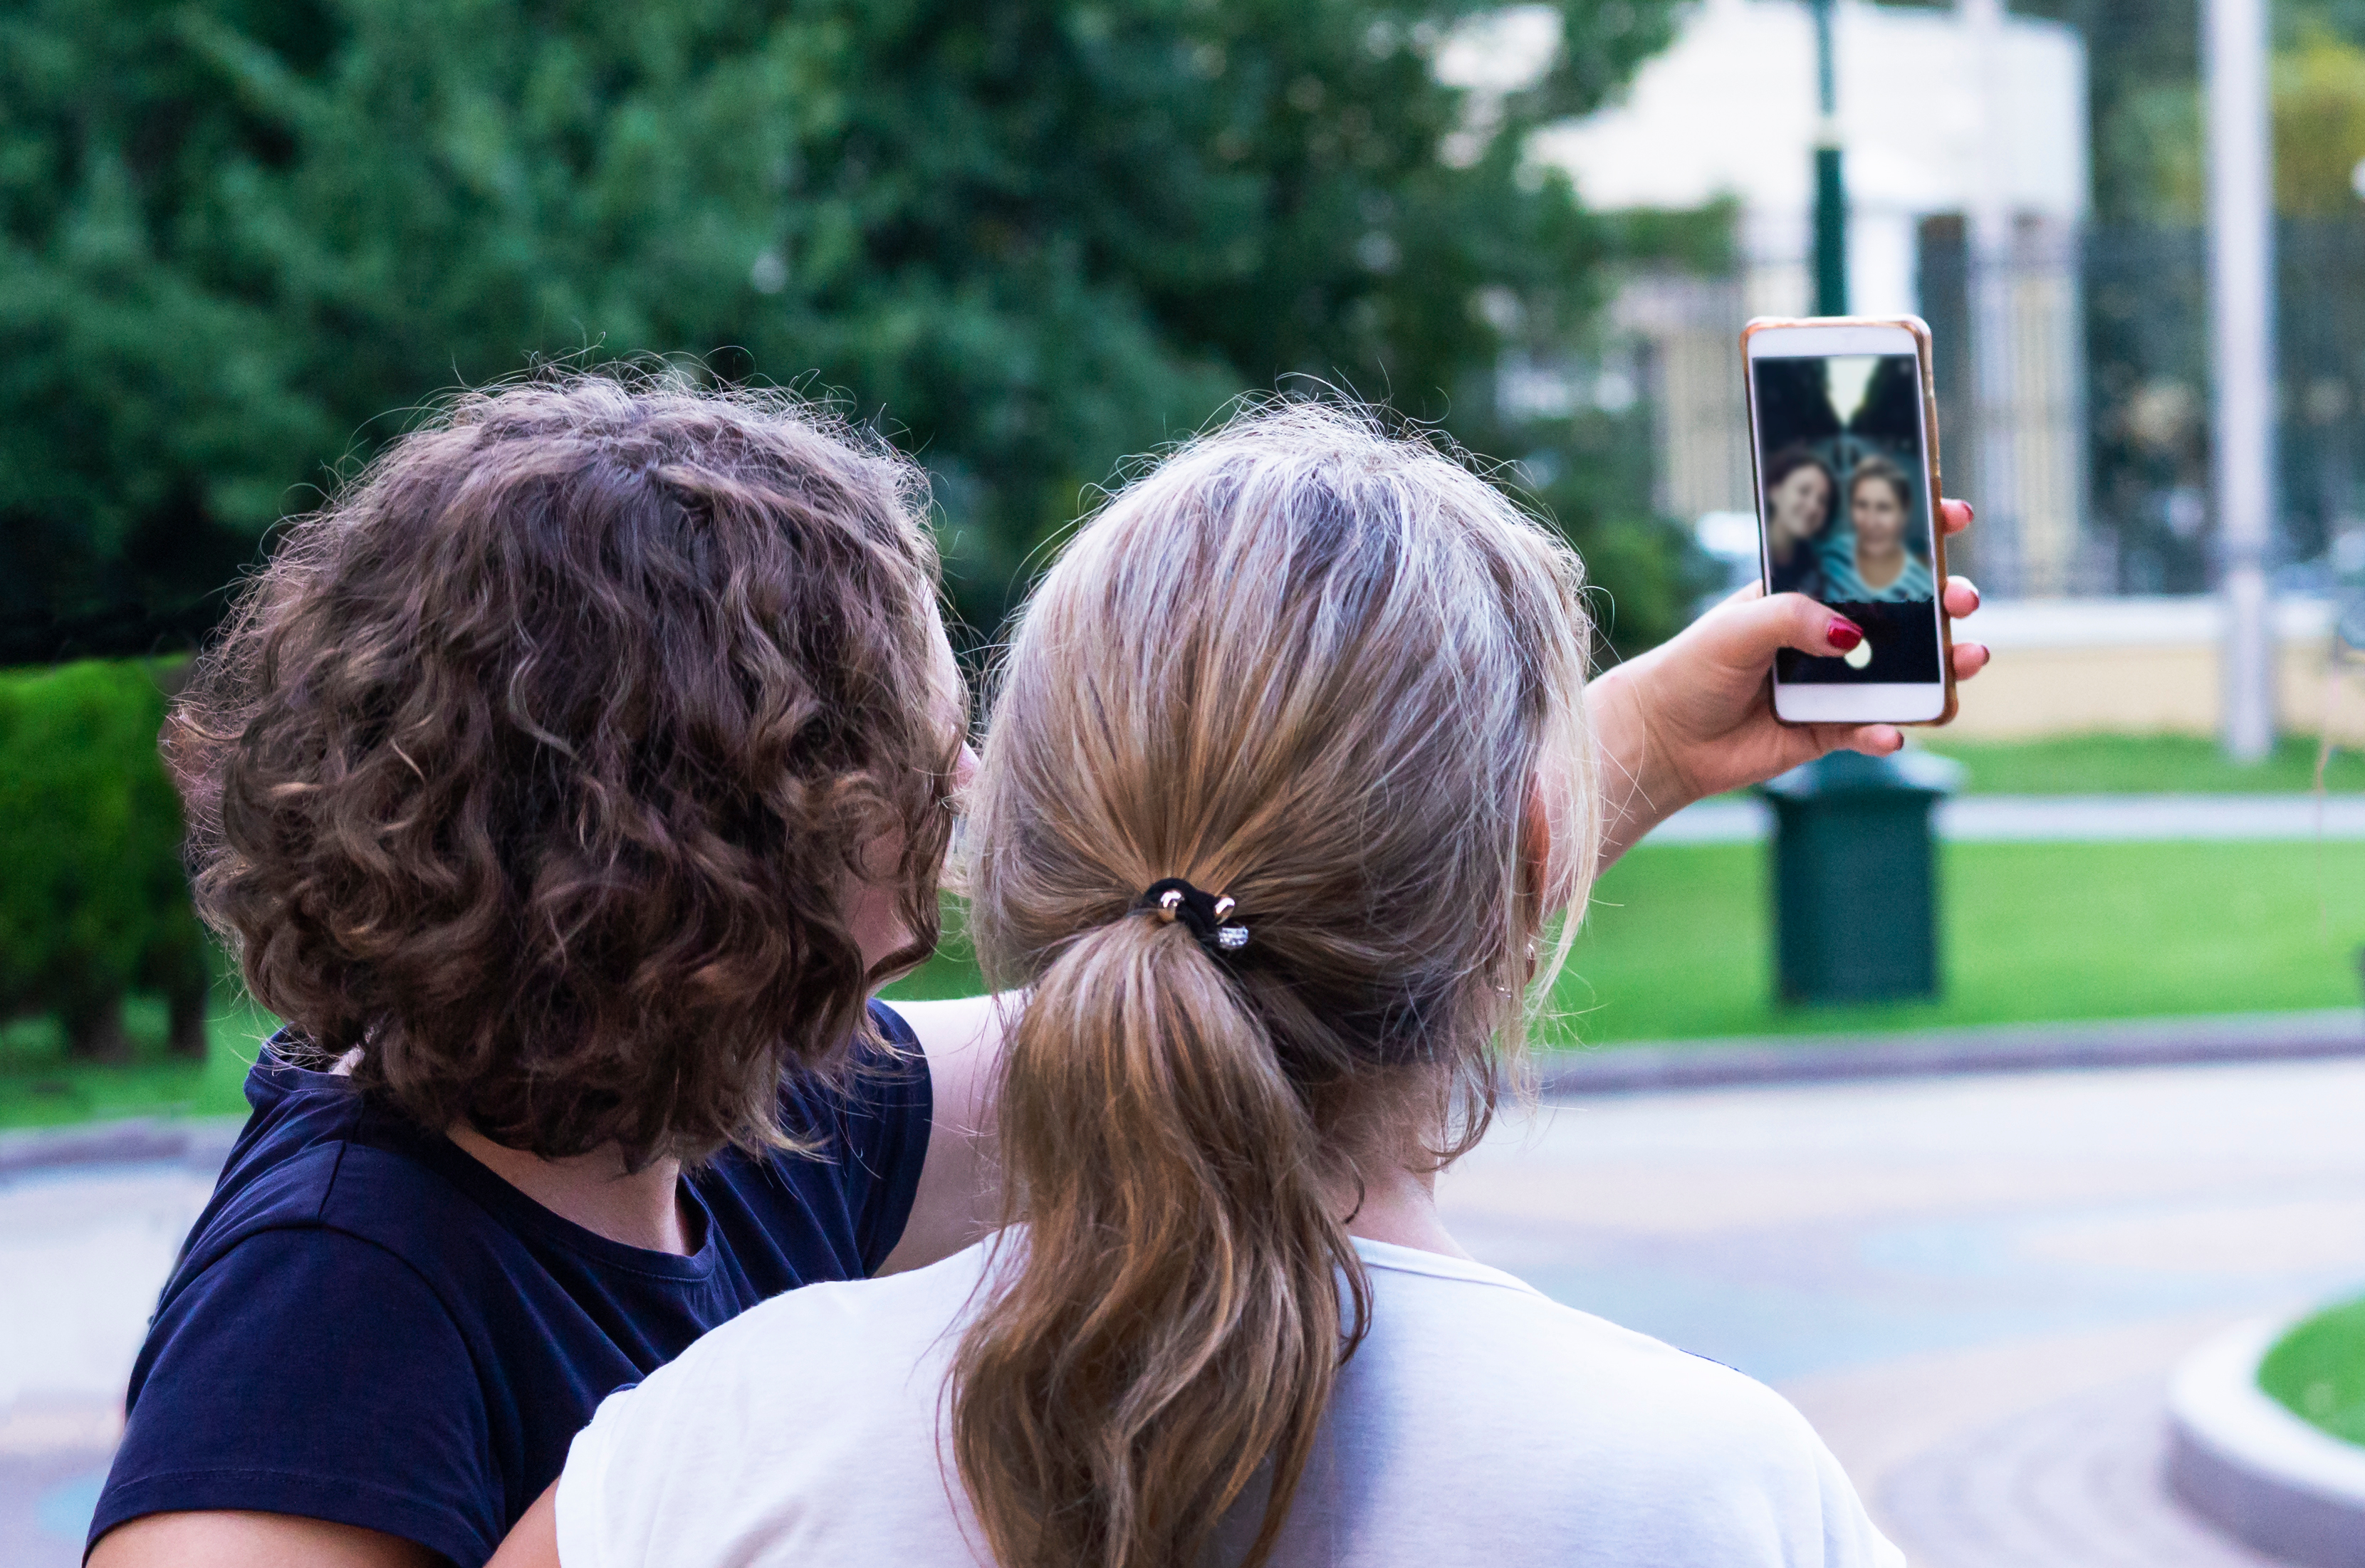 Girls taking a selfie/ Shutterstock